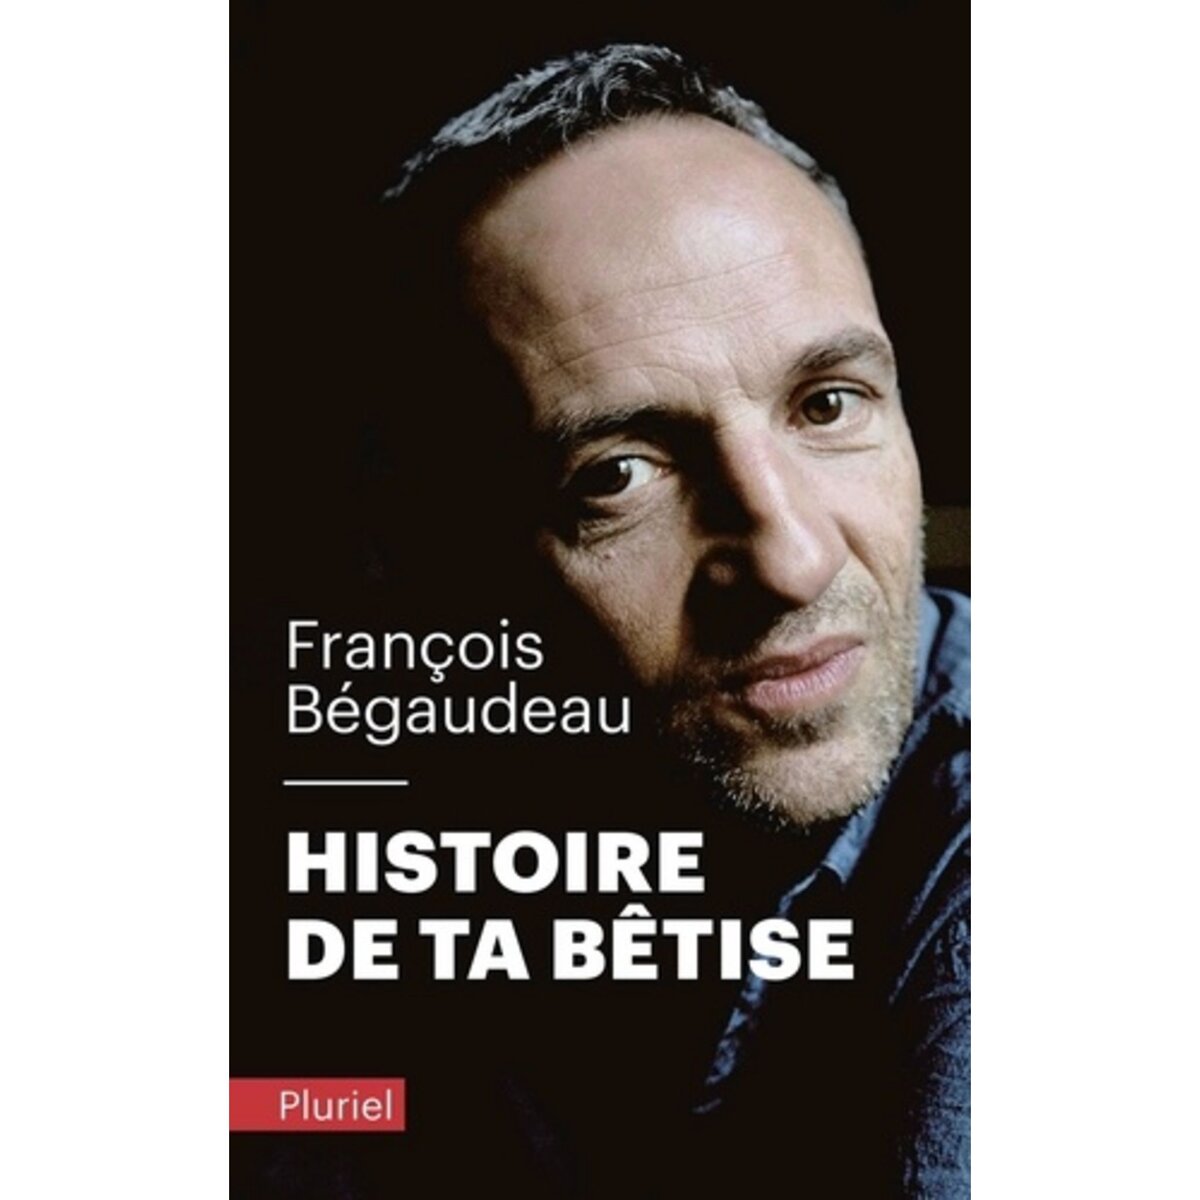  HISTOIRE DE TA BETISE, Bégaudeau François